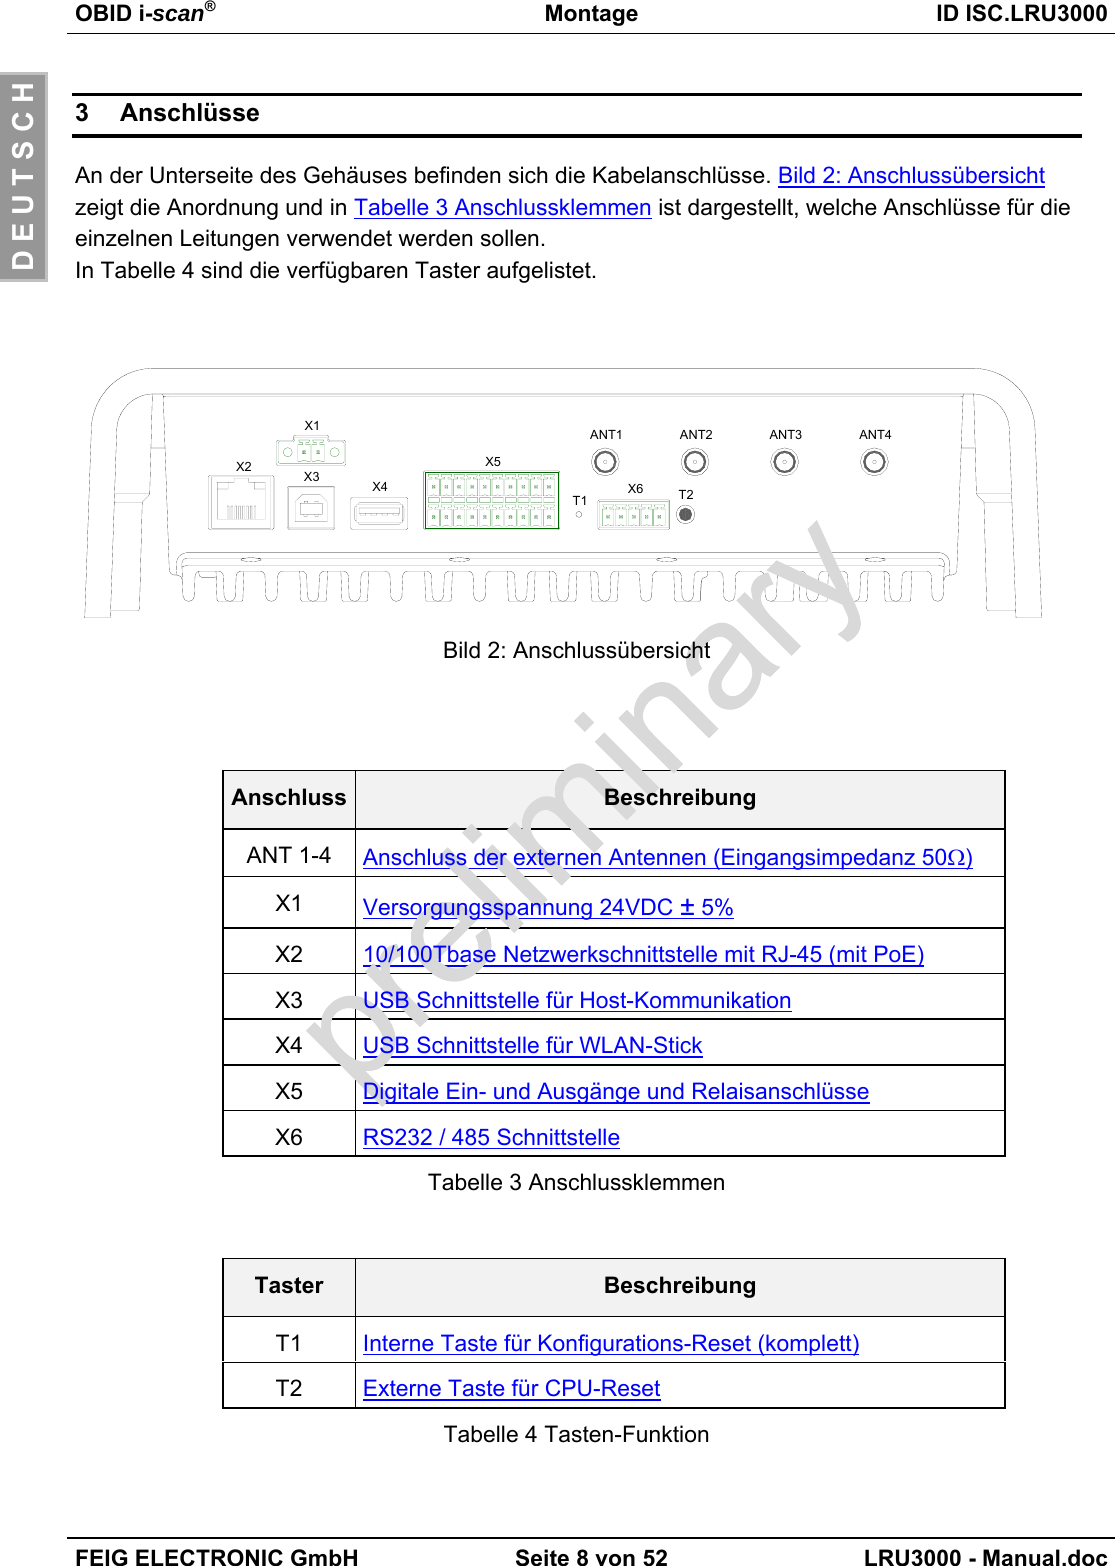 OBID i-scan®Montage ID ISC.LRU3000FEIG ELECTRONIC GmbH Seite 8 von 52 LRU3000 - Manual.docD E U T S C H3 AnschlüsseAn der Unterseite des Gehäuses befinden sich die Kabelanschlüsse. Bild 2: Anschlussübersichtzeigt die Anordnung und in Tabelle 3 Anschlussklemmen ist dargestellt, welche Anschlüsse für dieeinzelnen Leitungen verwendet werden sollen.In Tabelle 4 sind die verfügbaren Taster aufgelistet.X2 X3 X4X5X6T1 T2X1 ANT1 ANT2 ANT3 ANT4Bild 2: AnschlussübersichtAnschluss BeschreibungANT 1-4 Anschluss der externen Antennen (Eingangsimpedanz 50Ω)X1 Versorgungsspannung 24VDC ± 5%X2 10/100Tbase Netzwerkschnittstelle mit RJ-45 (mit PoE)X3 USB Schnittstelle für Host-KommunikationX4 USB Schnittstelle für WLAN-StickX5 Digitale Ein- und Ausgänge und RelaisanschlüsseX6 RS232 / 485 SchnittstelleTabelle 3 AnschlussklemmenTaster BeschreibungT1 Interne Taste für Konfigurations-Reset (komplett)T2 Externe Taste für CPU-ResetTabelle 4 Tasten-Funktion